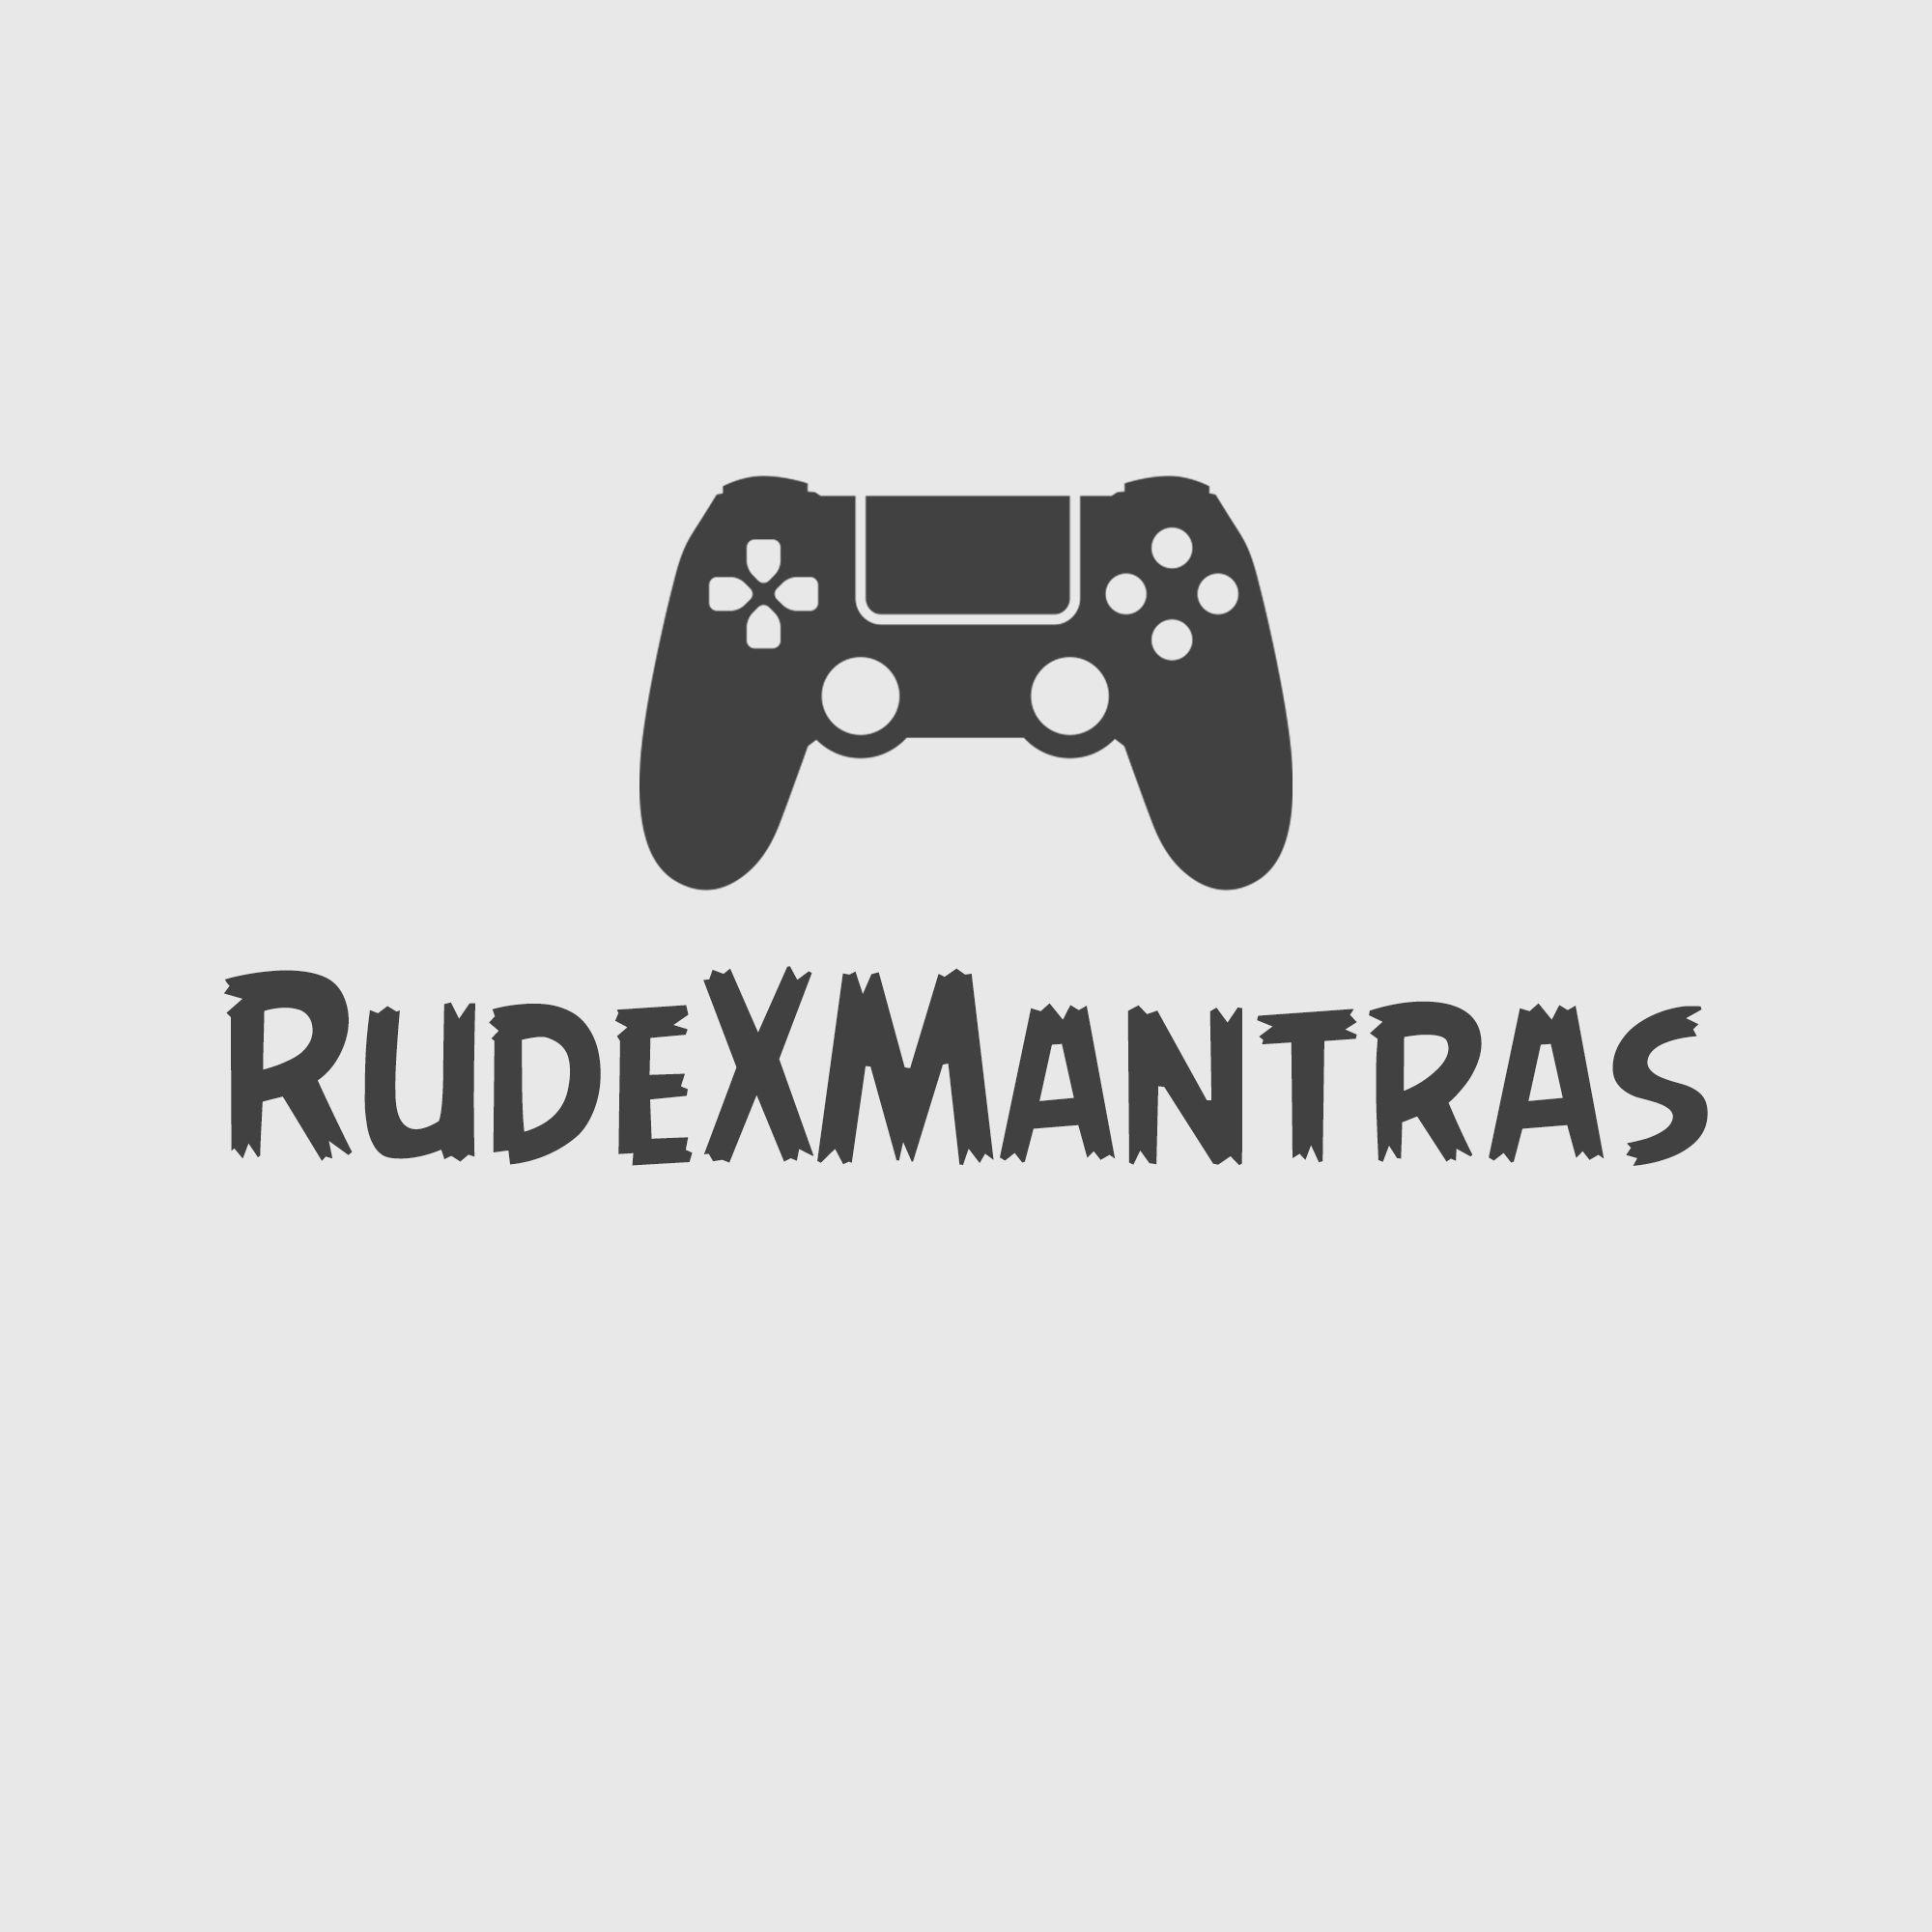 Player RudeIMantras avatar